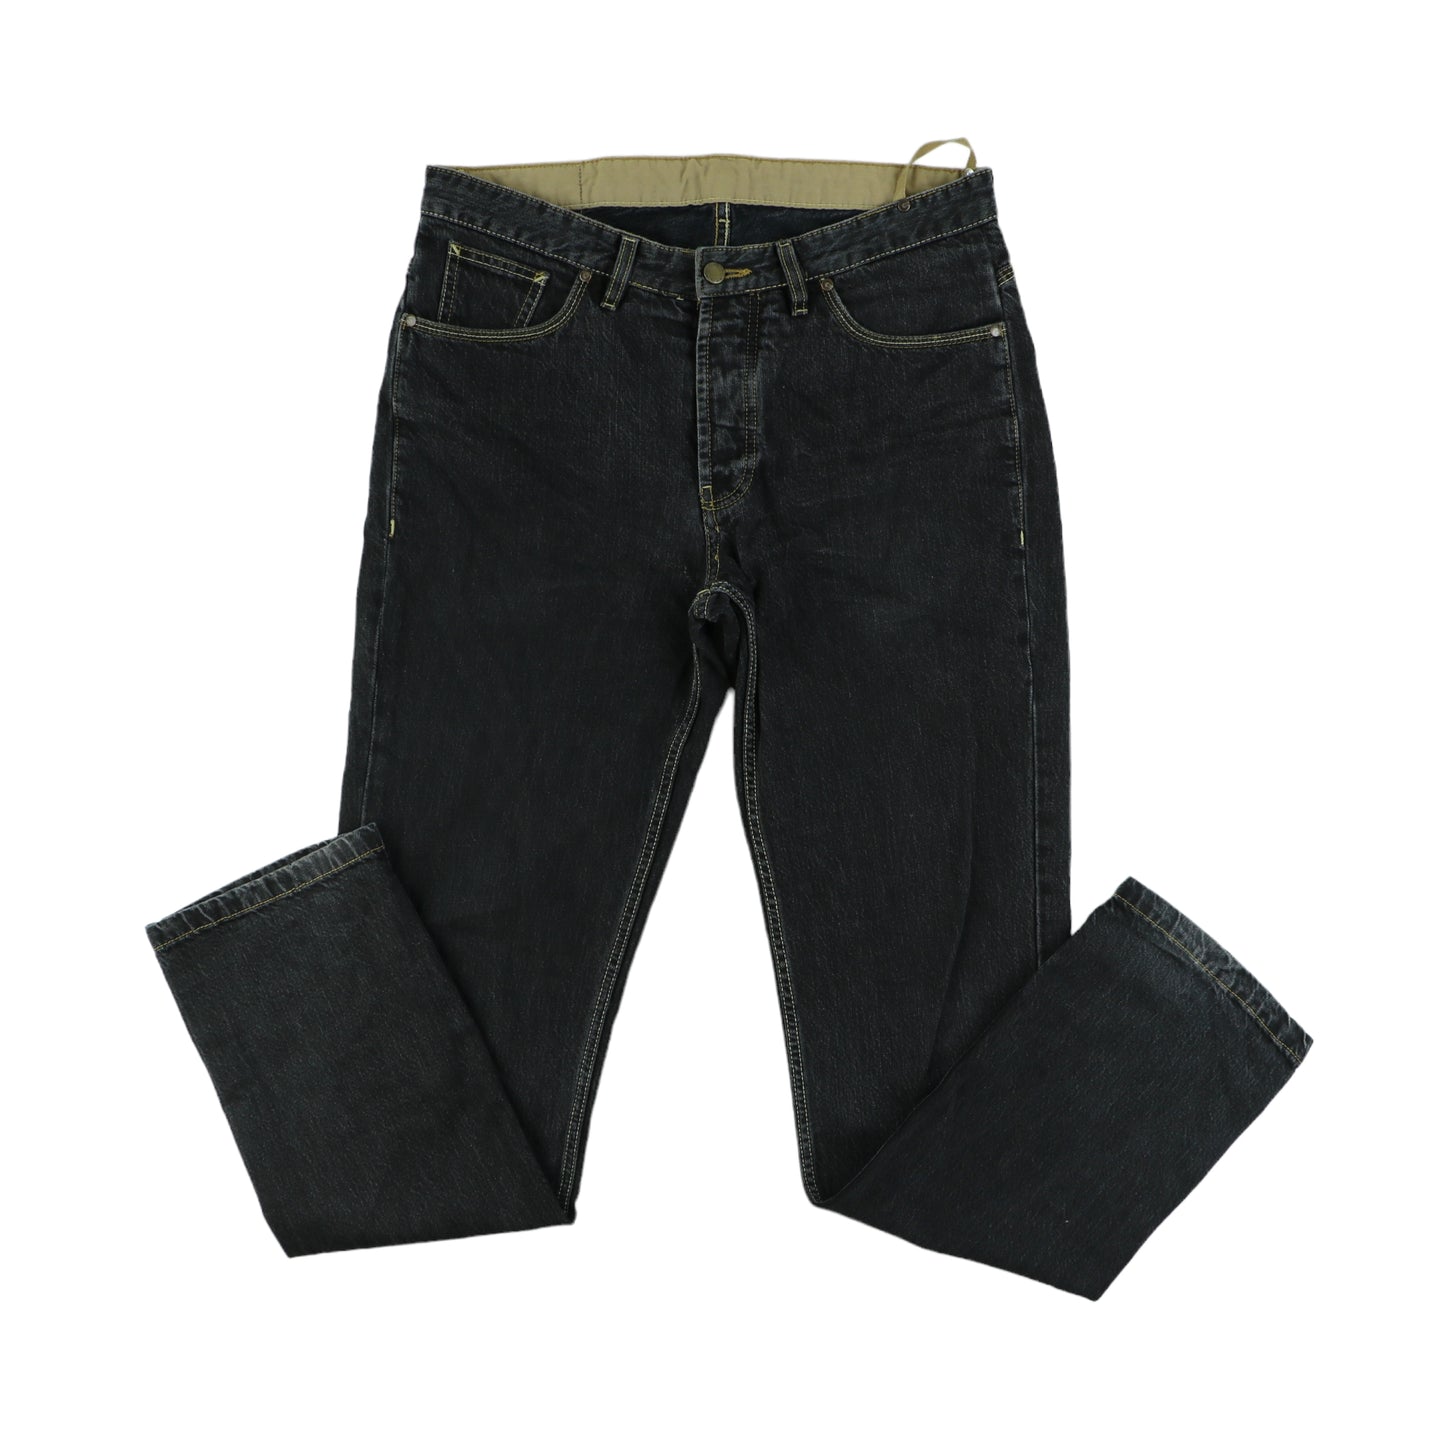 Dockers Jeans (34)